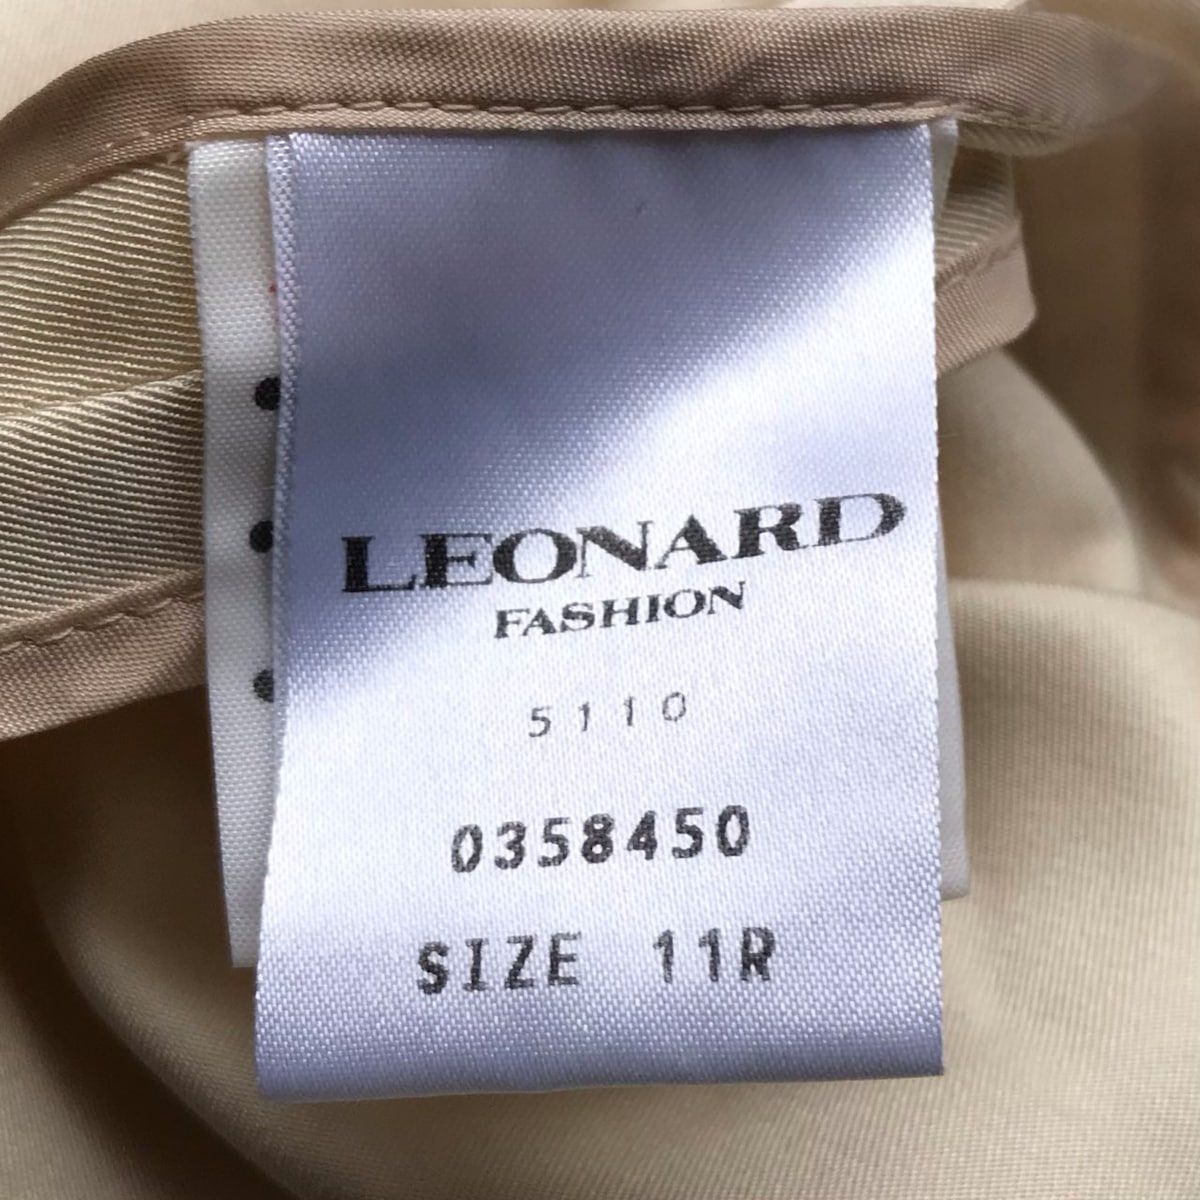 LEONARD(レオナール) コート サイズ11R レディース - ベージュ×ダークブラウン×マルチ 長袖/肩パッド/春/秋